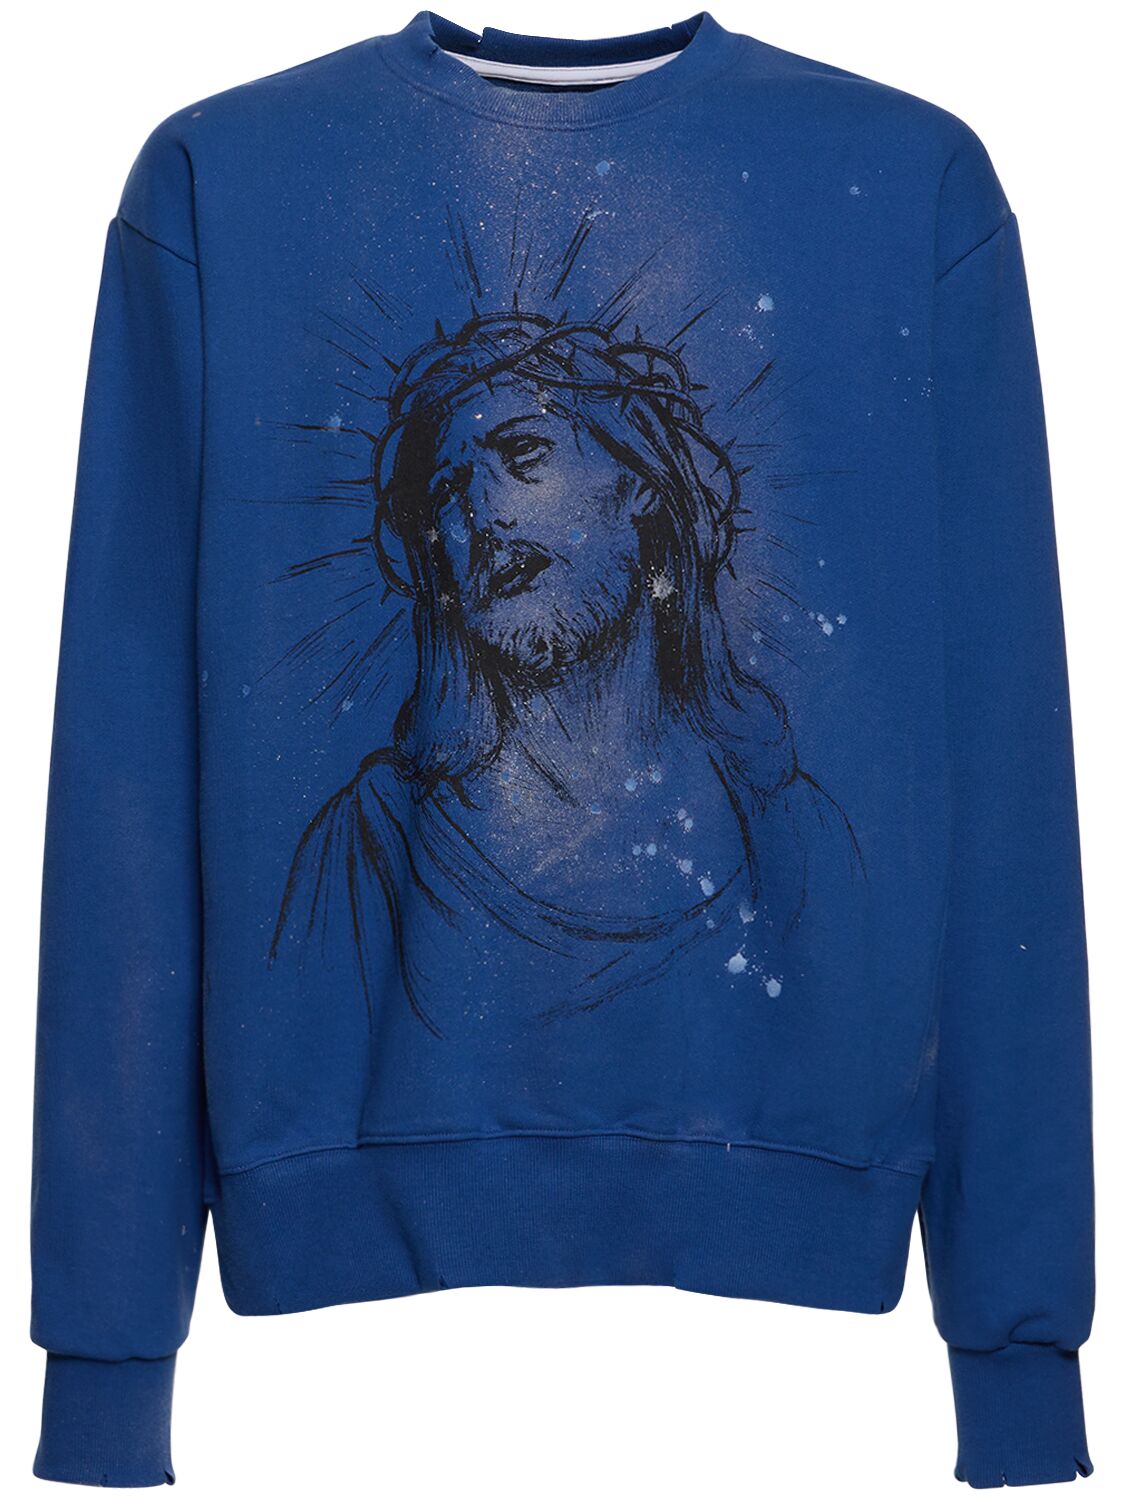 Someit Jesus Printed & Painted Sweatshirt In Blue,multi